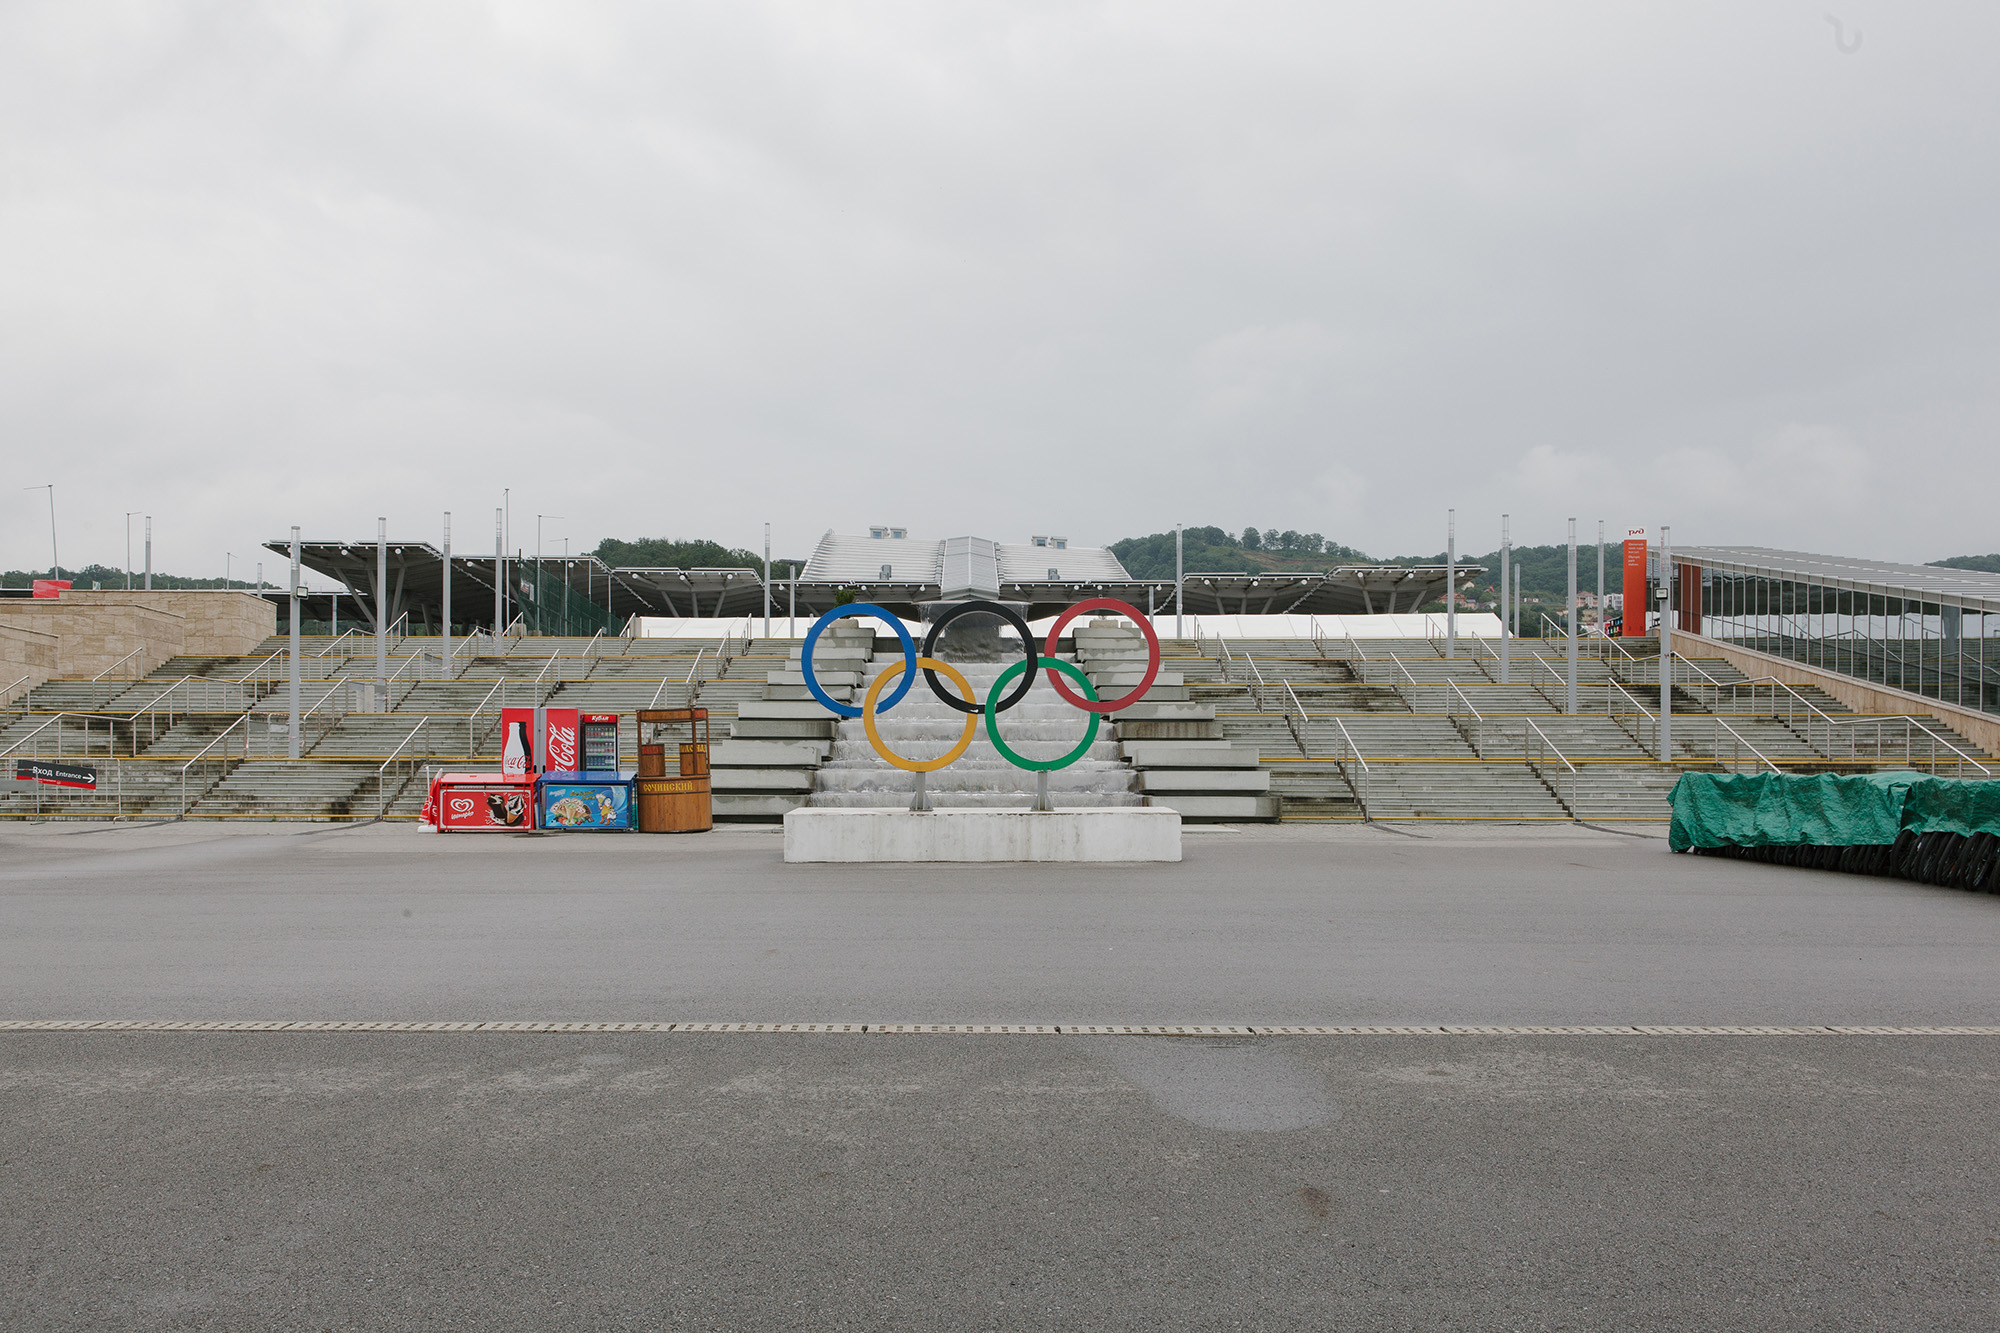 старообрядческое кладбище в олимпийском парке в сочи история